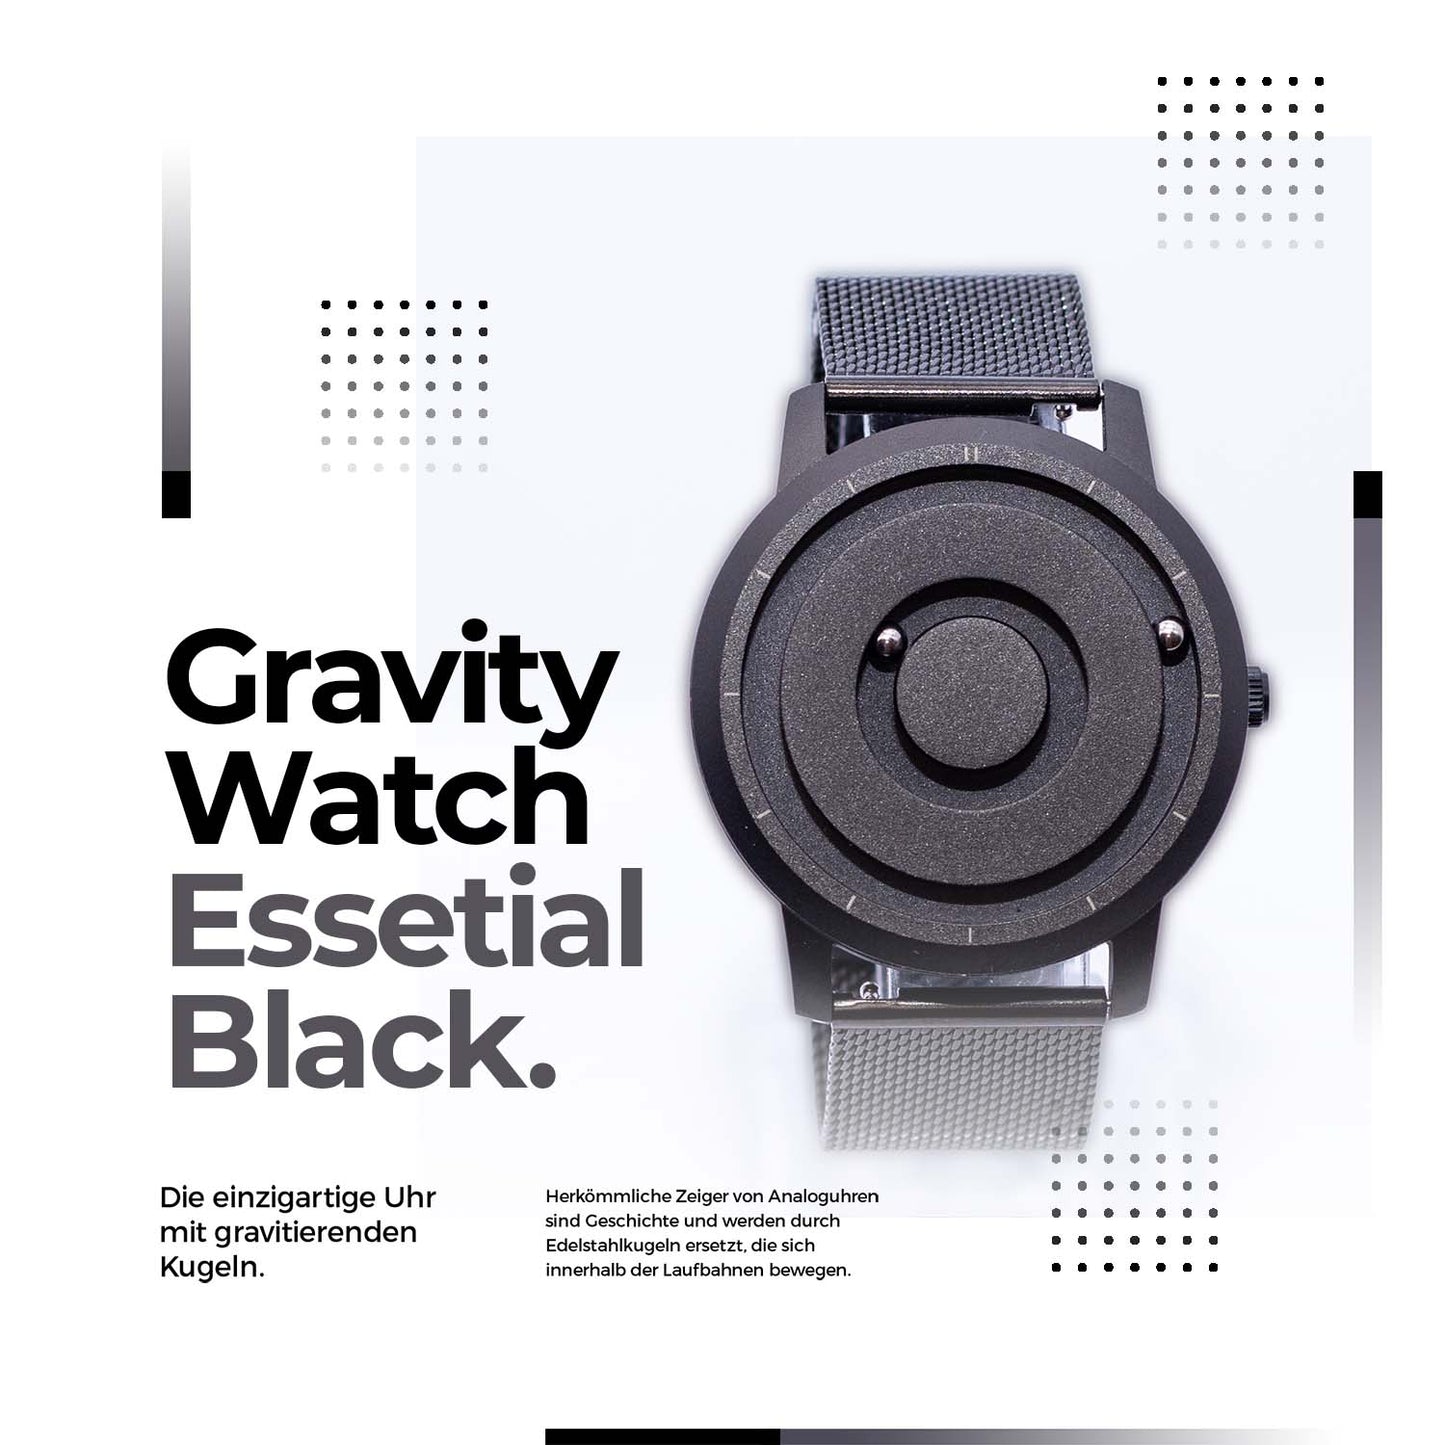 Essential Black - Gravity Watch